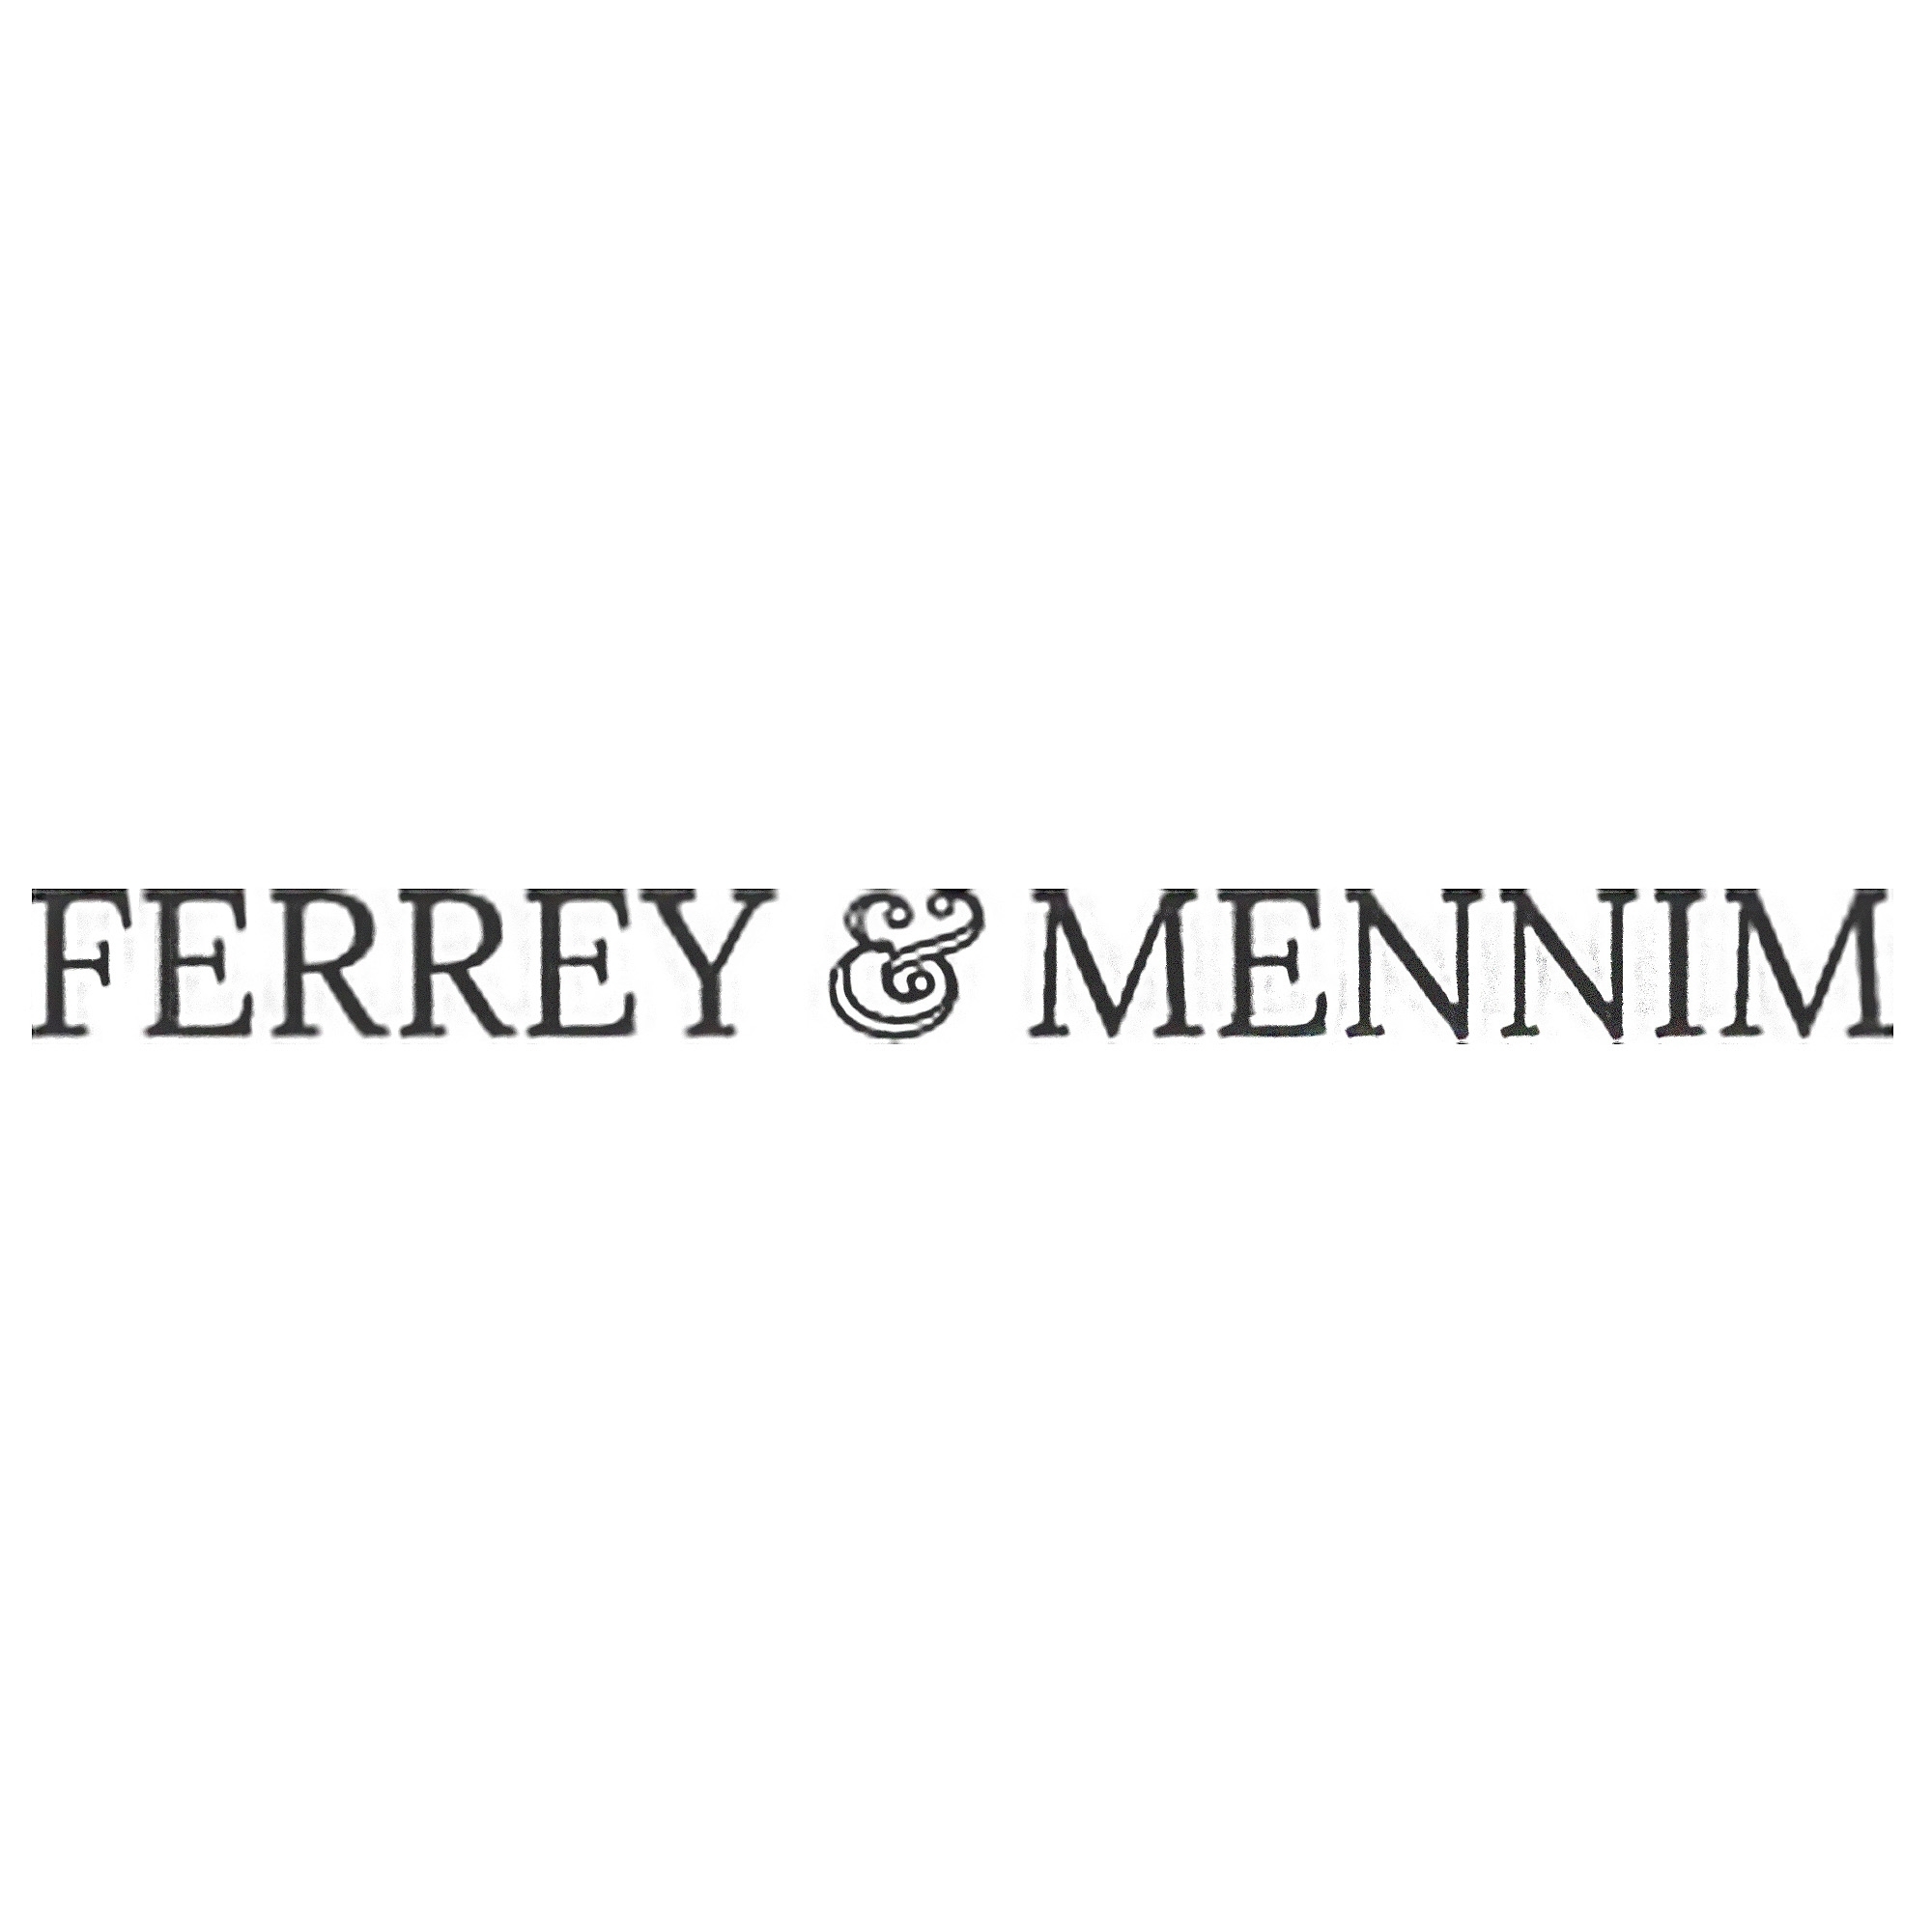 Ferrey and Mennim